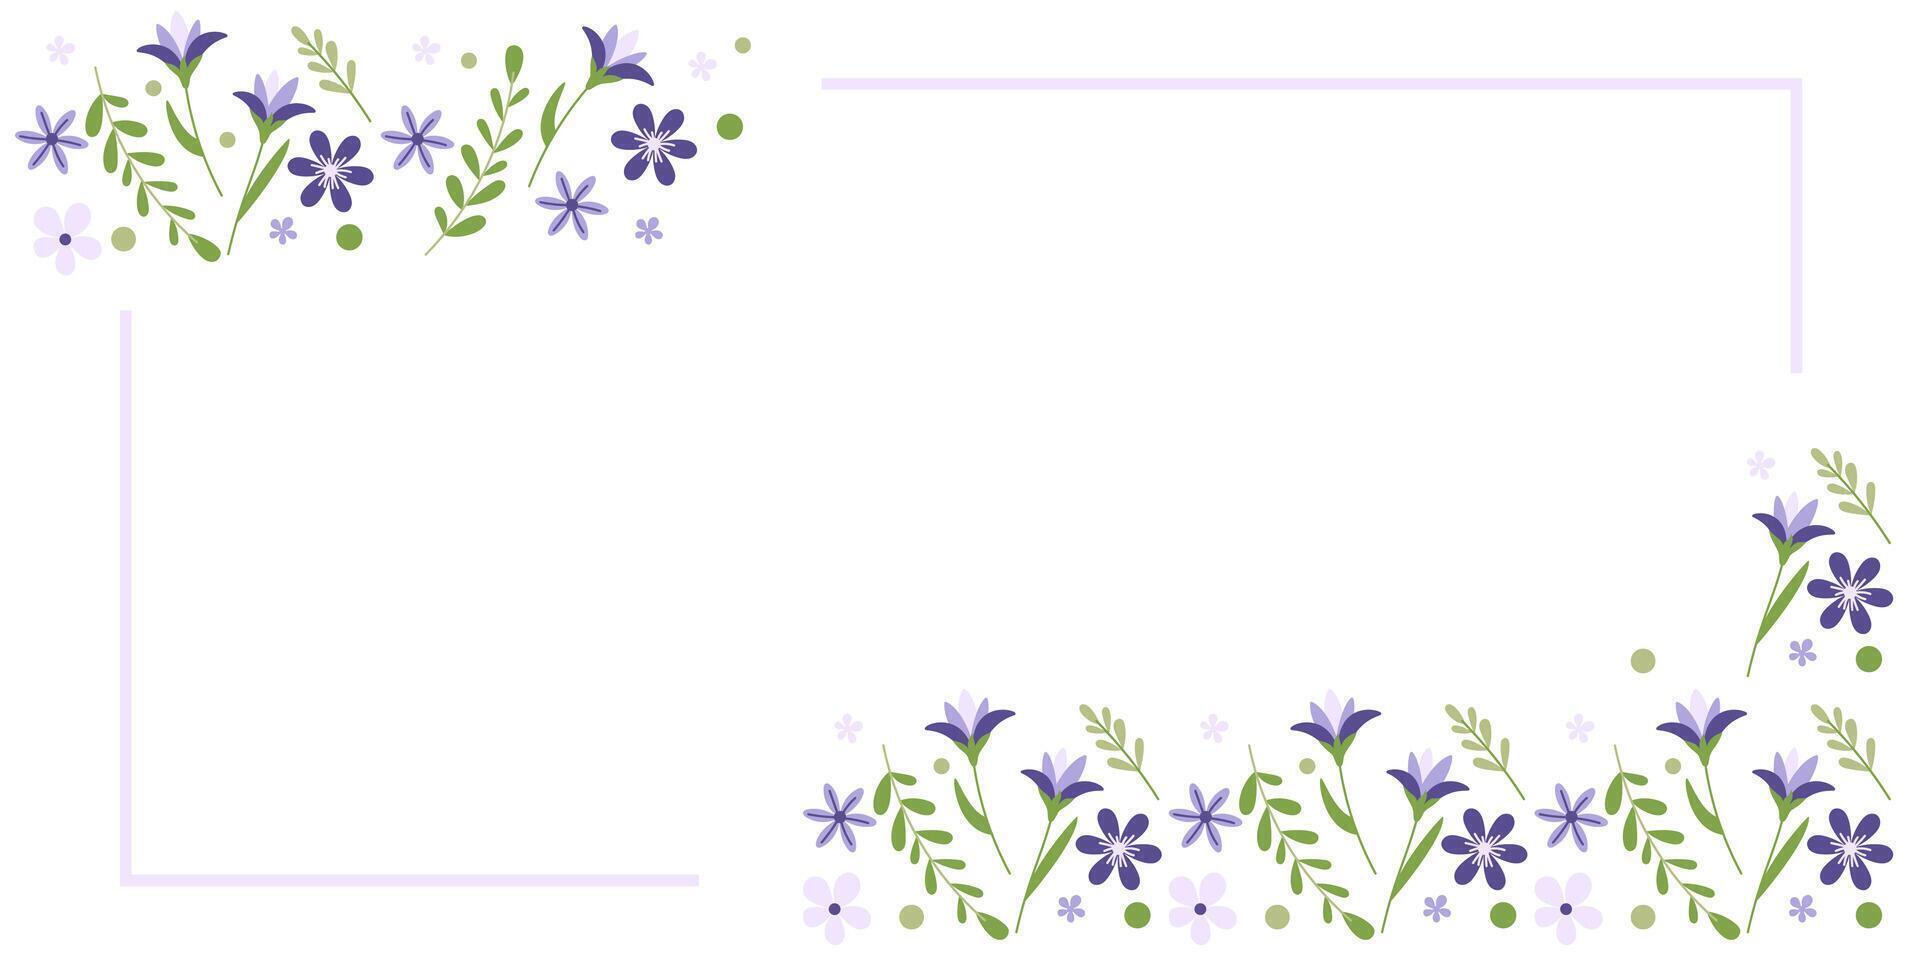 printemps fleurs frontière. crocus et lilas sur une blanc Contexte. modifiable modèle pour salutation carte, invitation, étiqueter, scrapbooking. vecteur illustration.